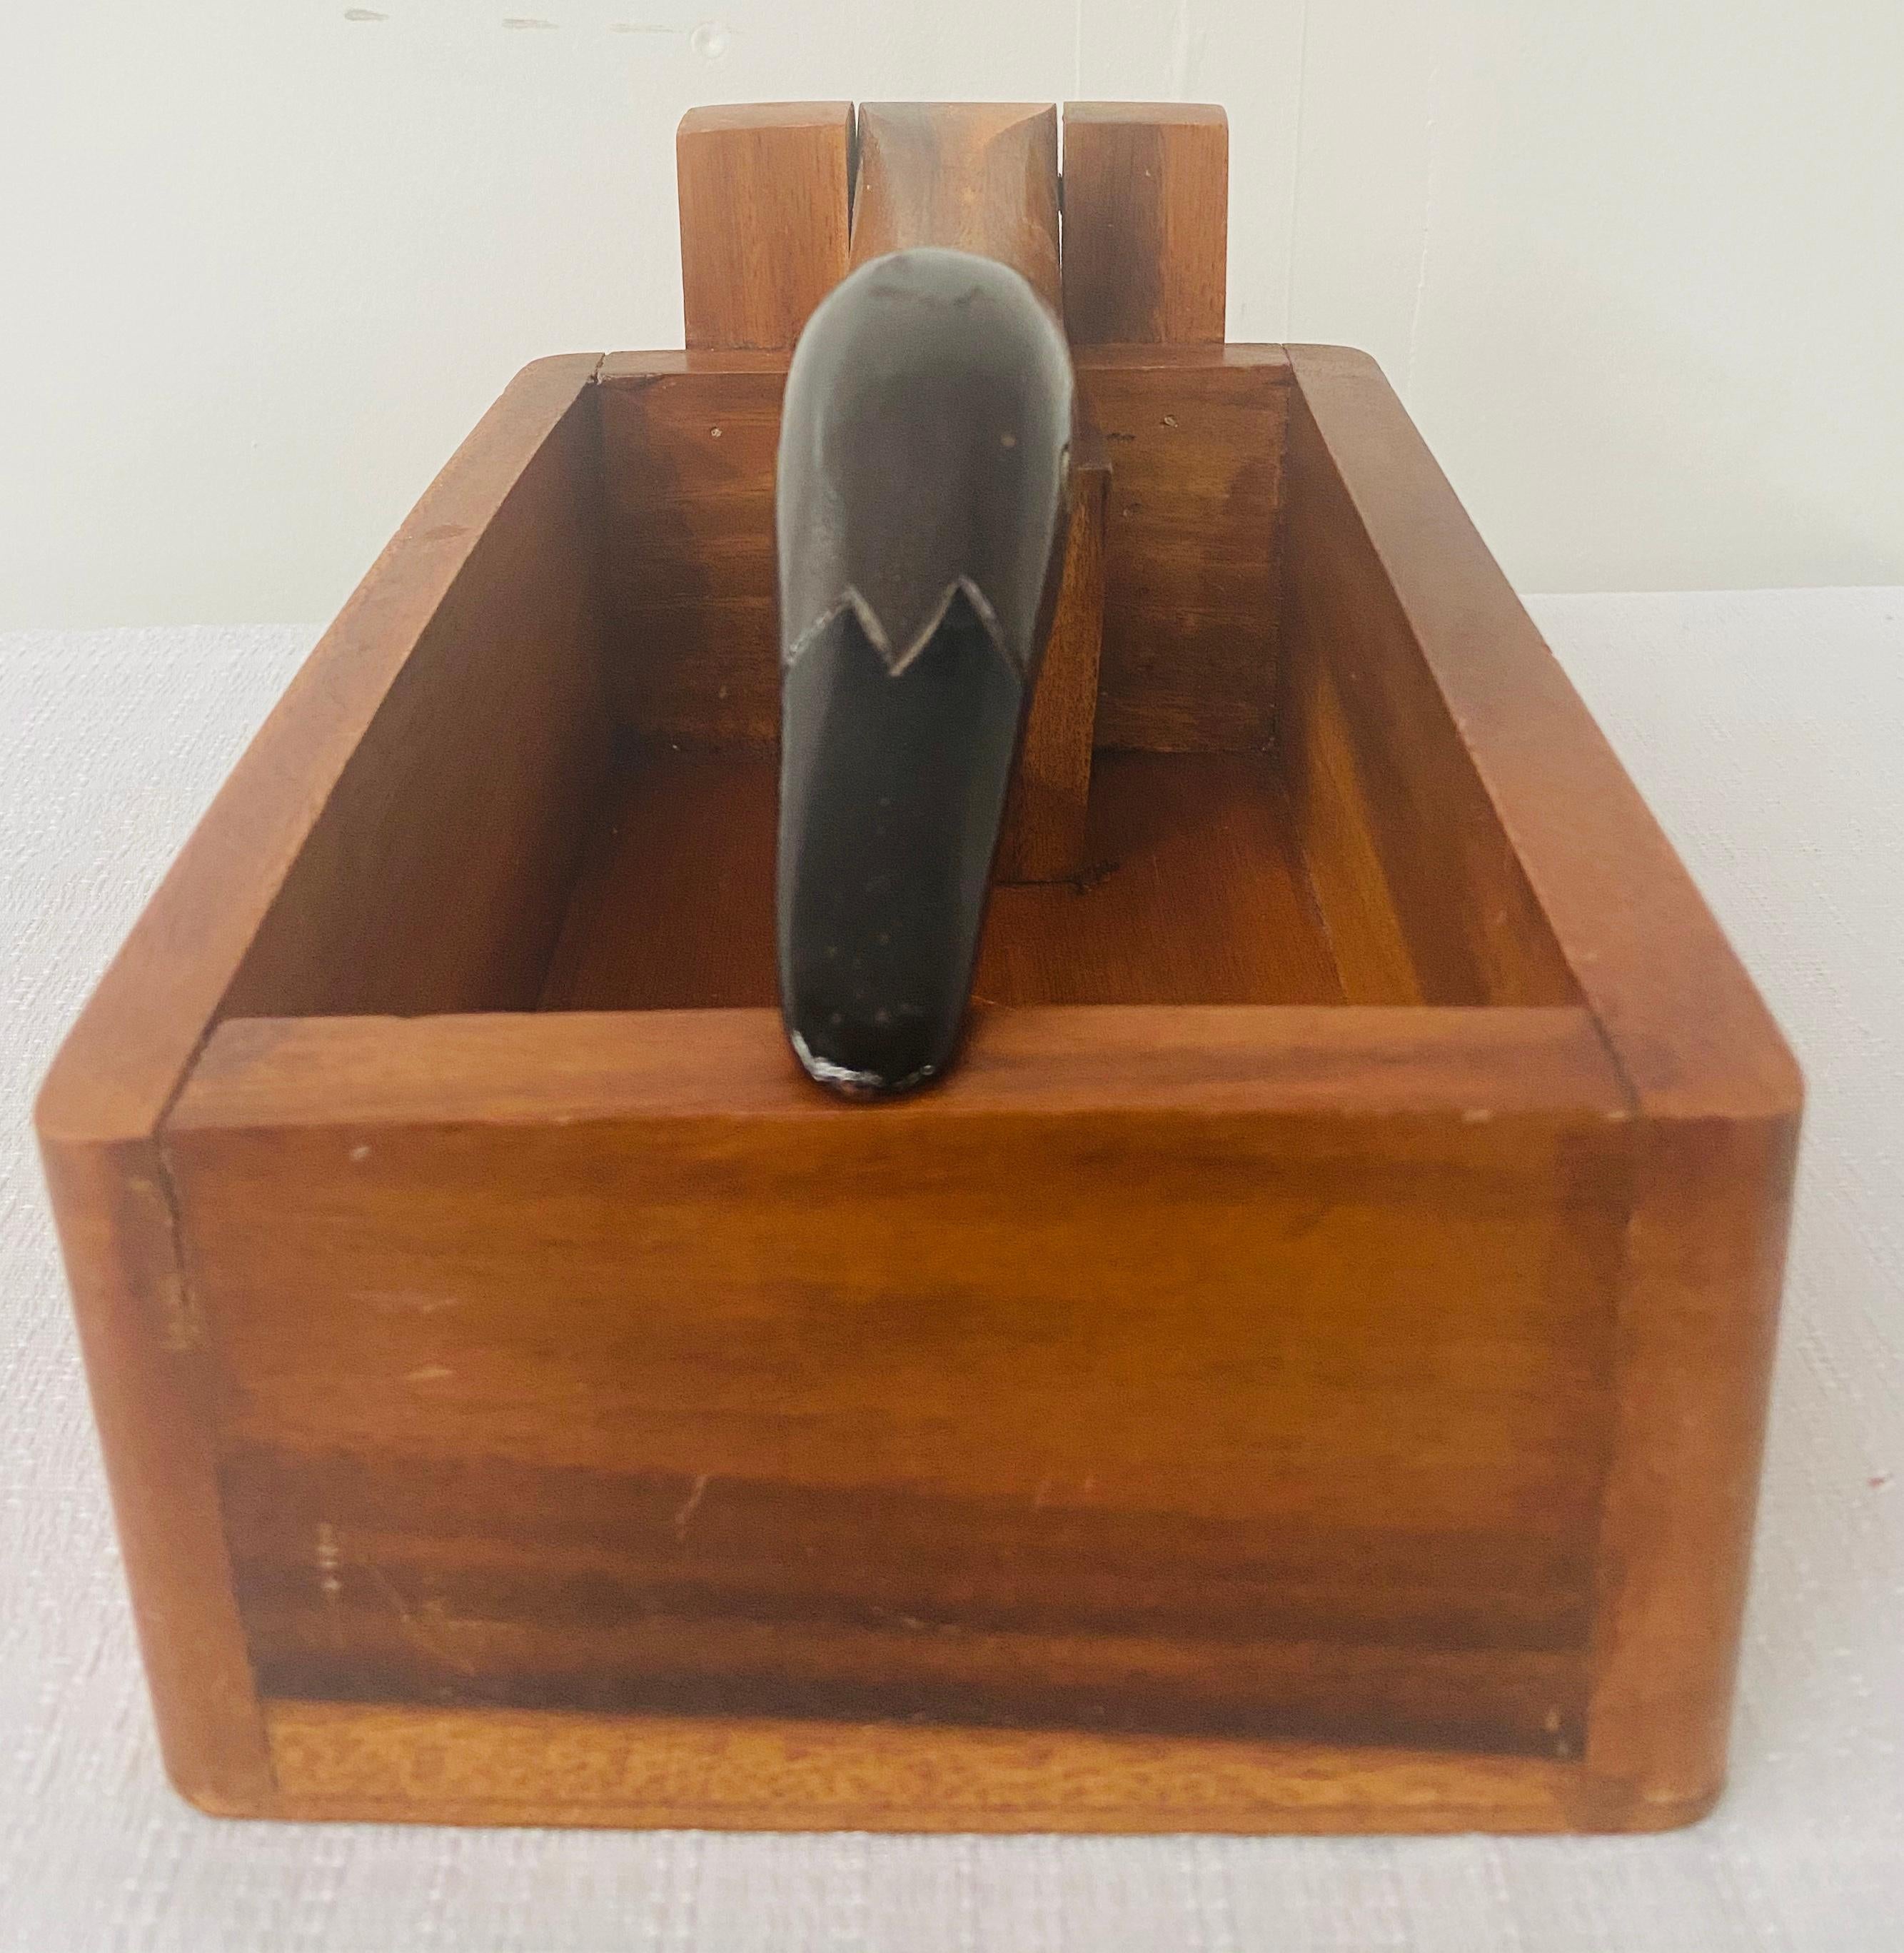 Une boîte à oiseaux vintage en bois de noyer pour le casse-noix, datant des années 1980.

Dimensions : 10.5